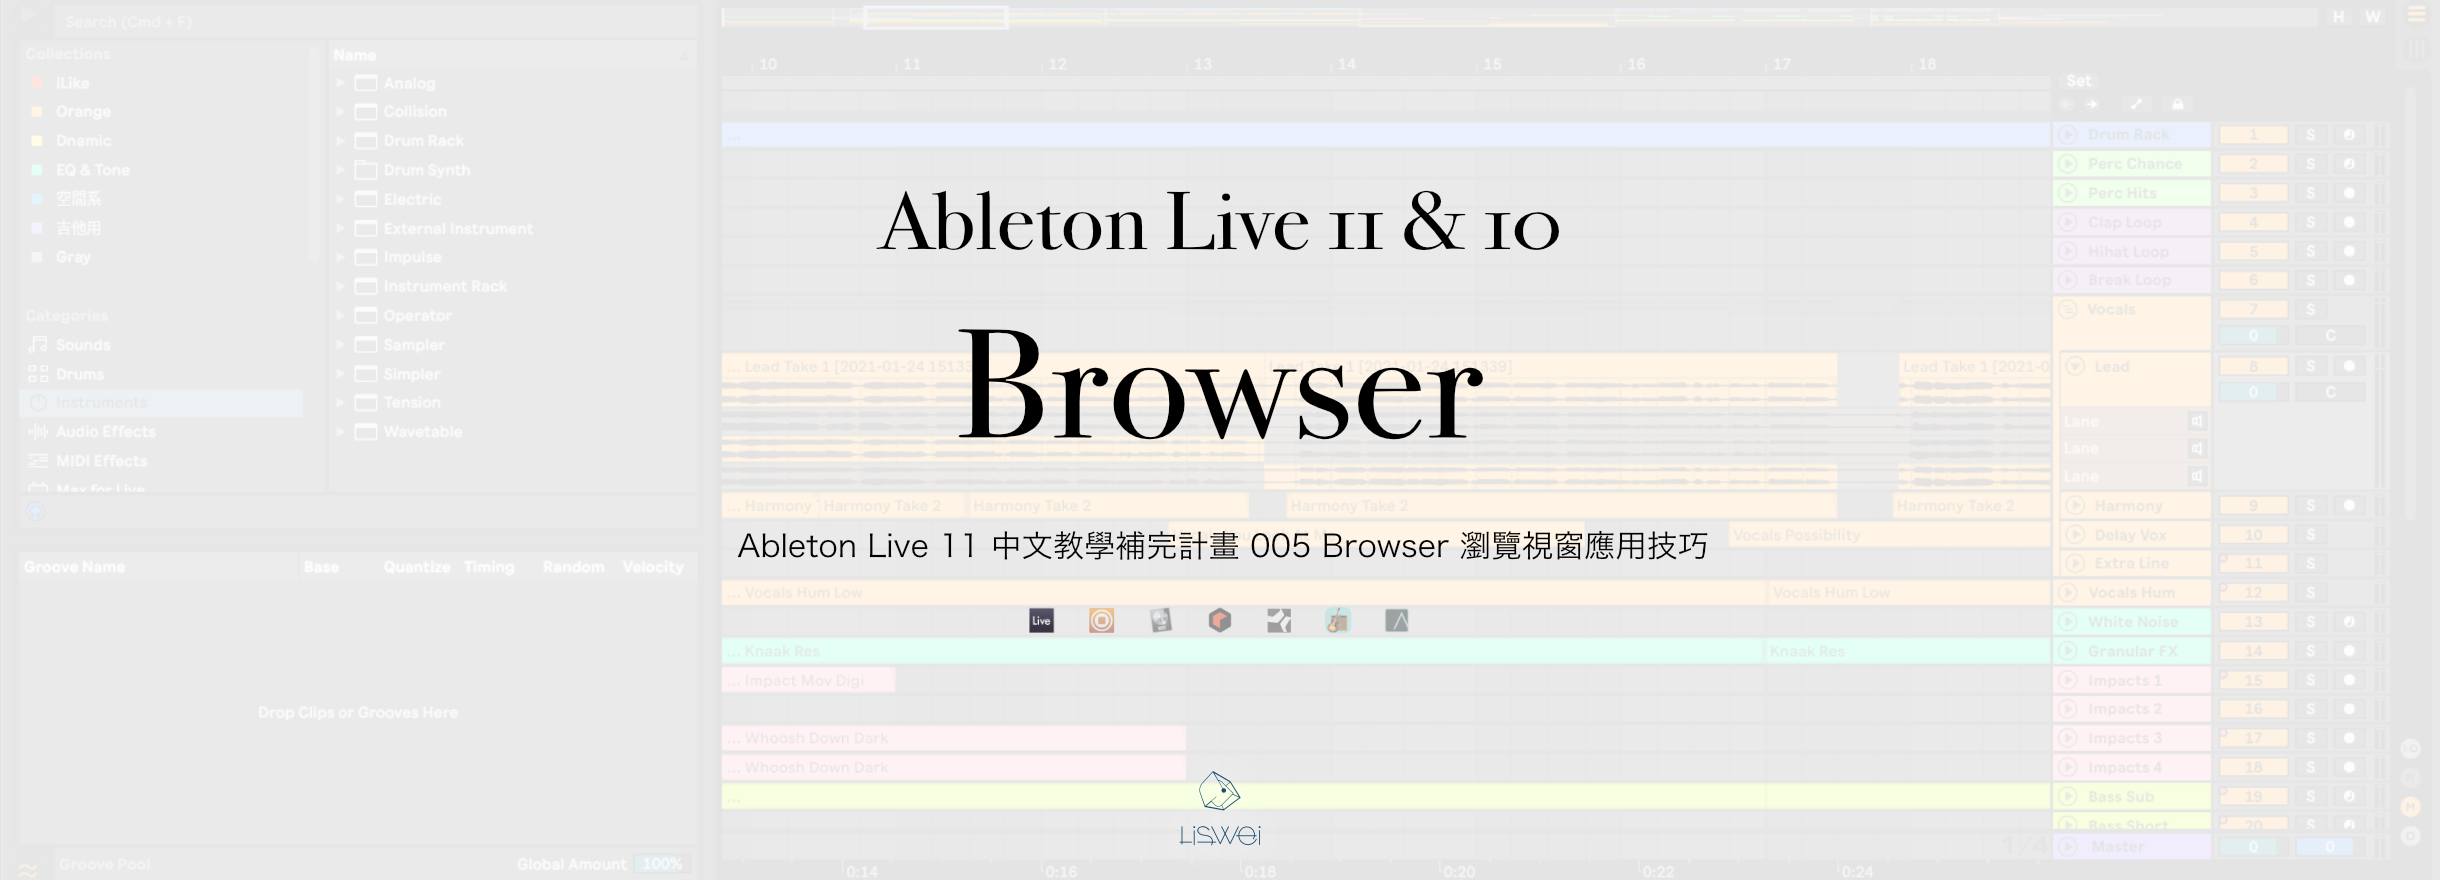 Ableton Live 11&10 browser